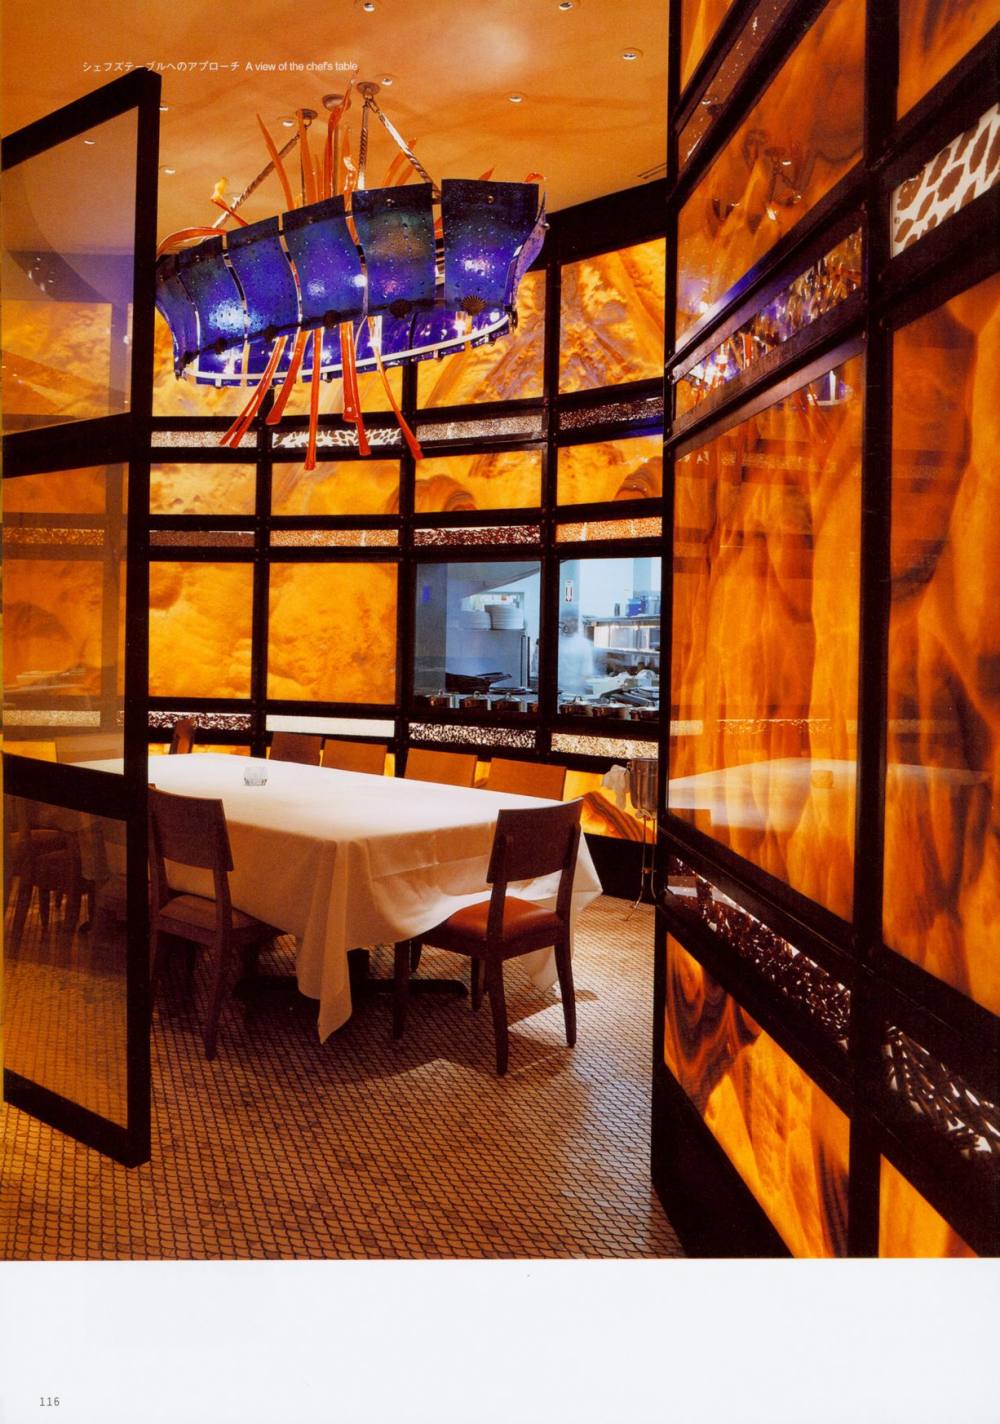 世界餐厅与酒吧设计精选3_116.jpg